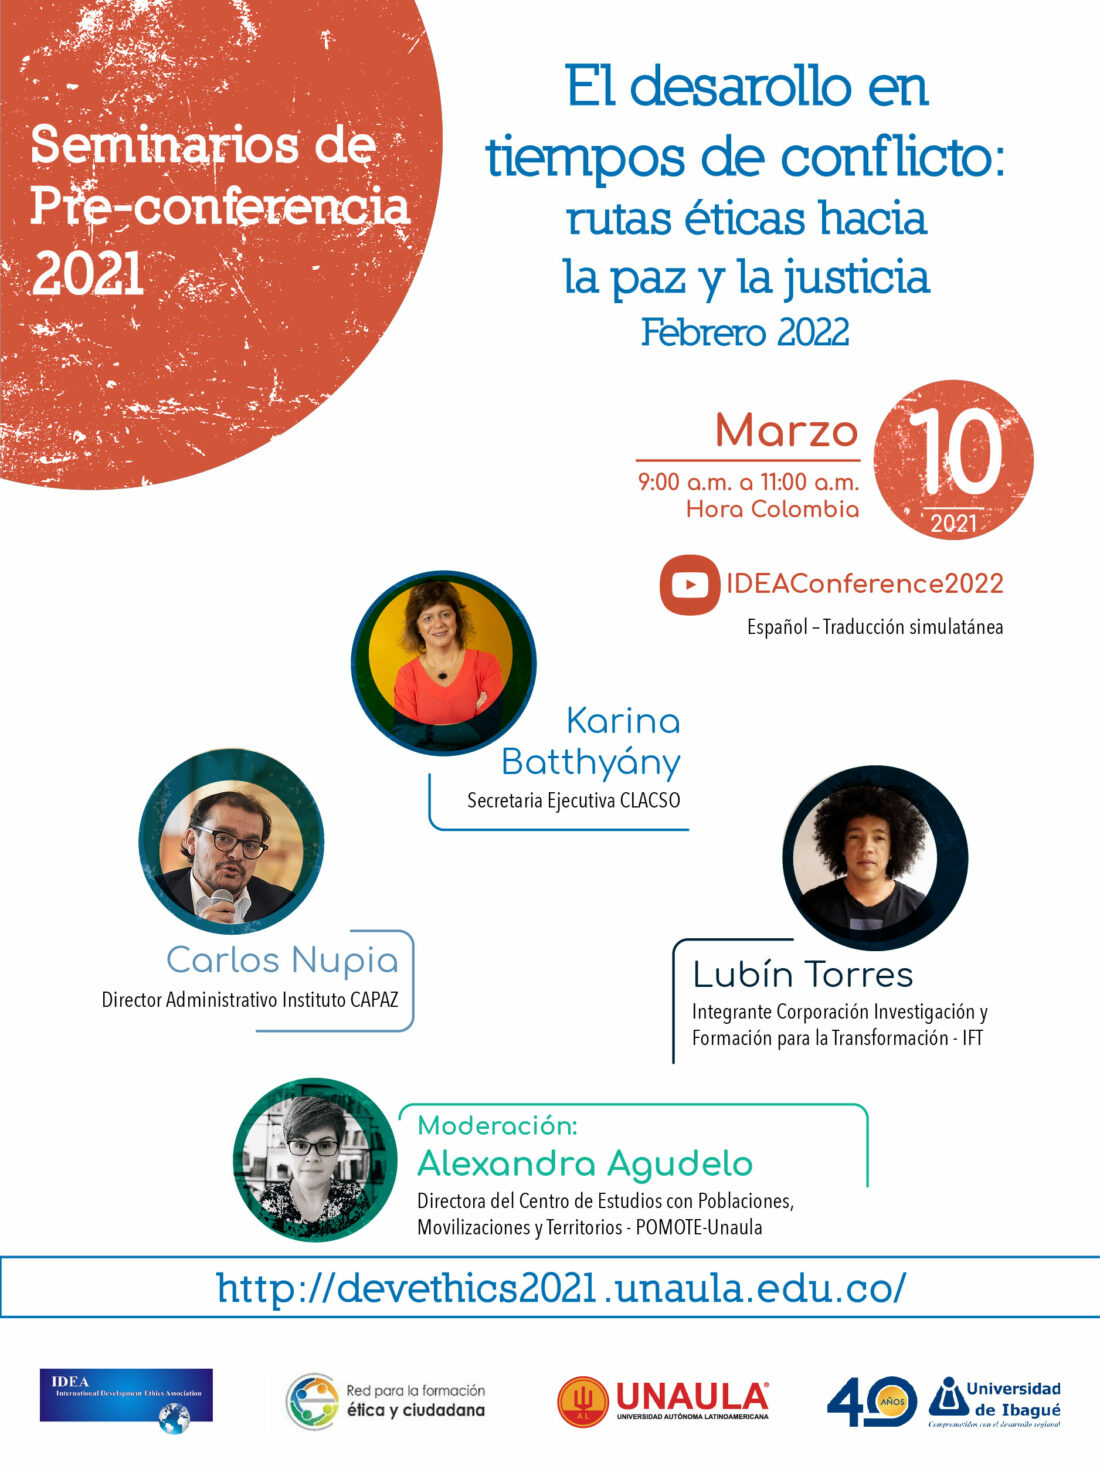 Flyer promocional del evento previo en 2021 al congreso IDEA en Medellín en 2022.